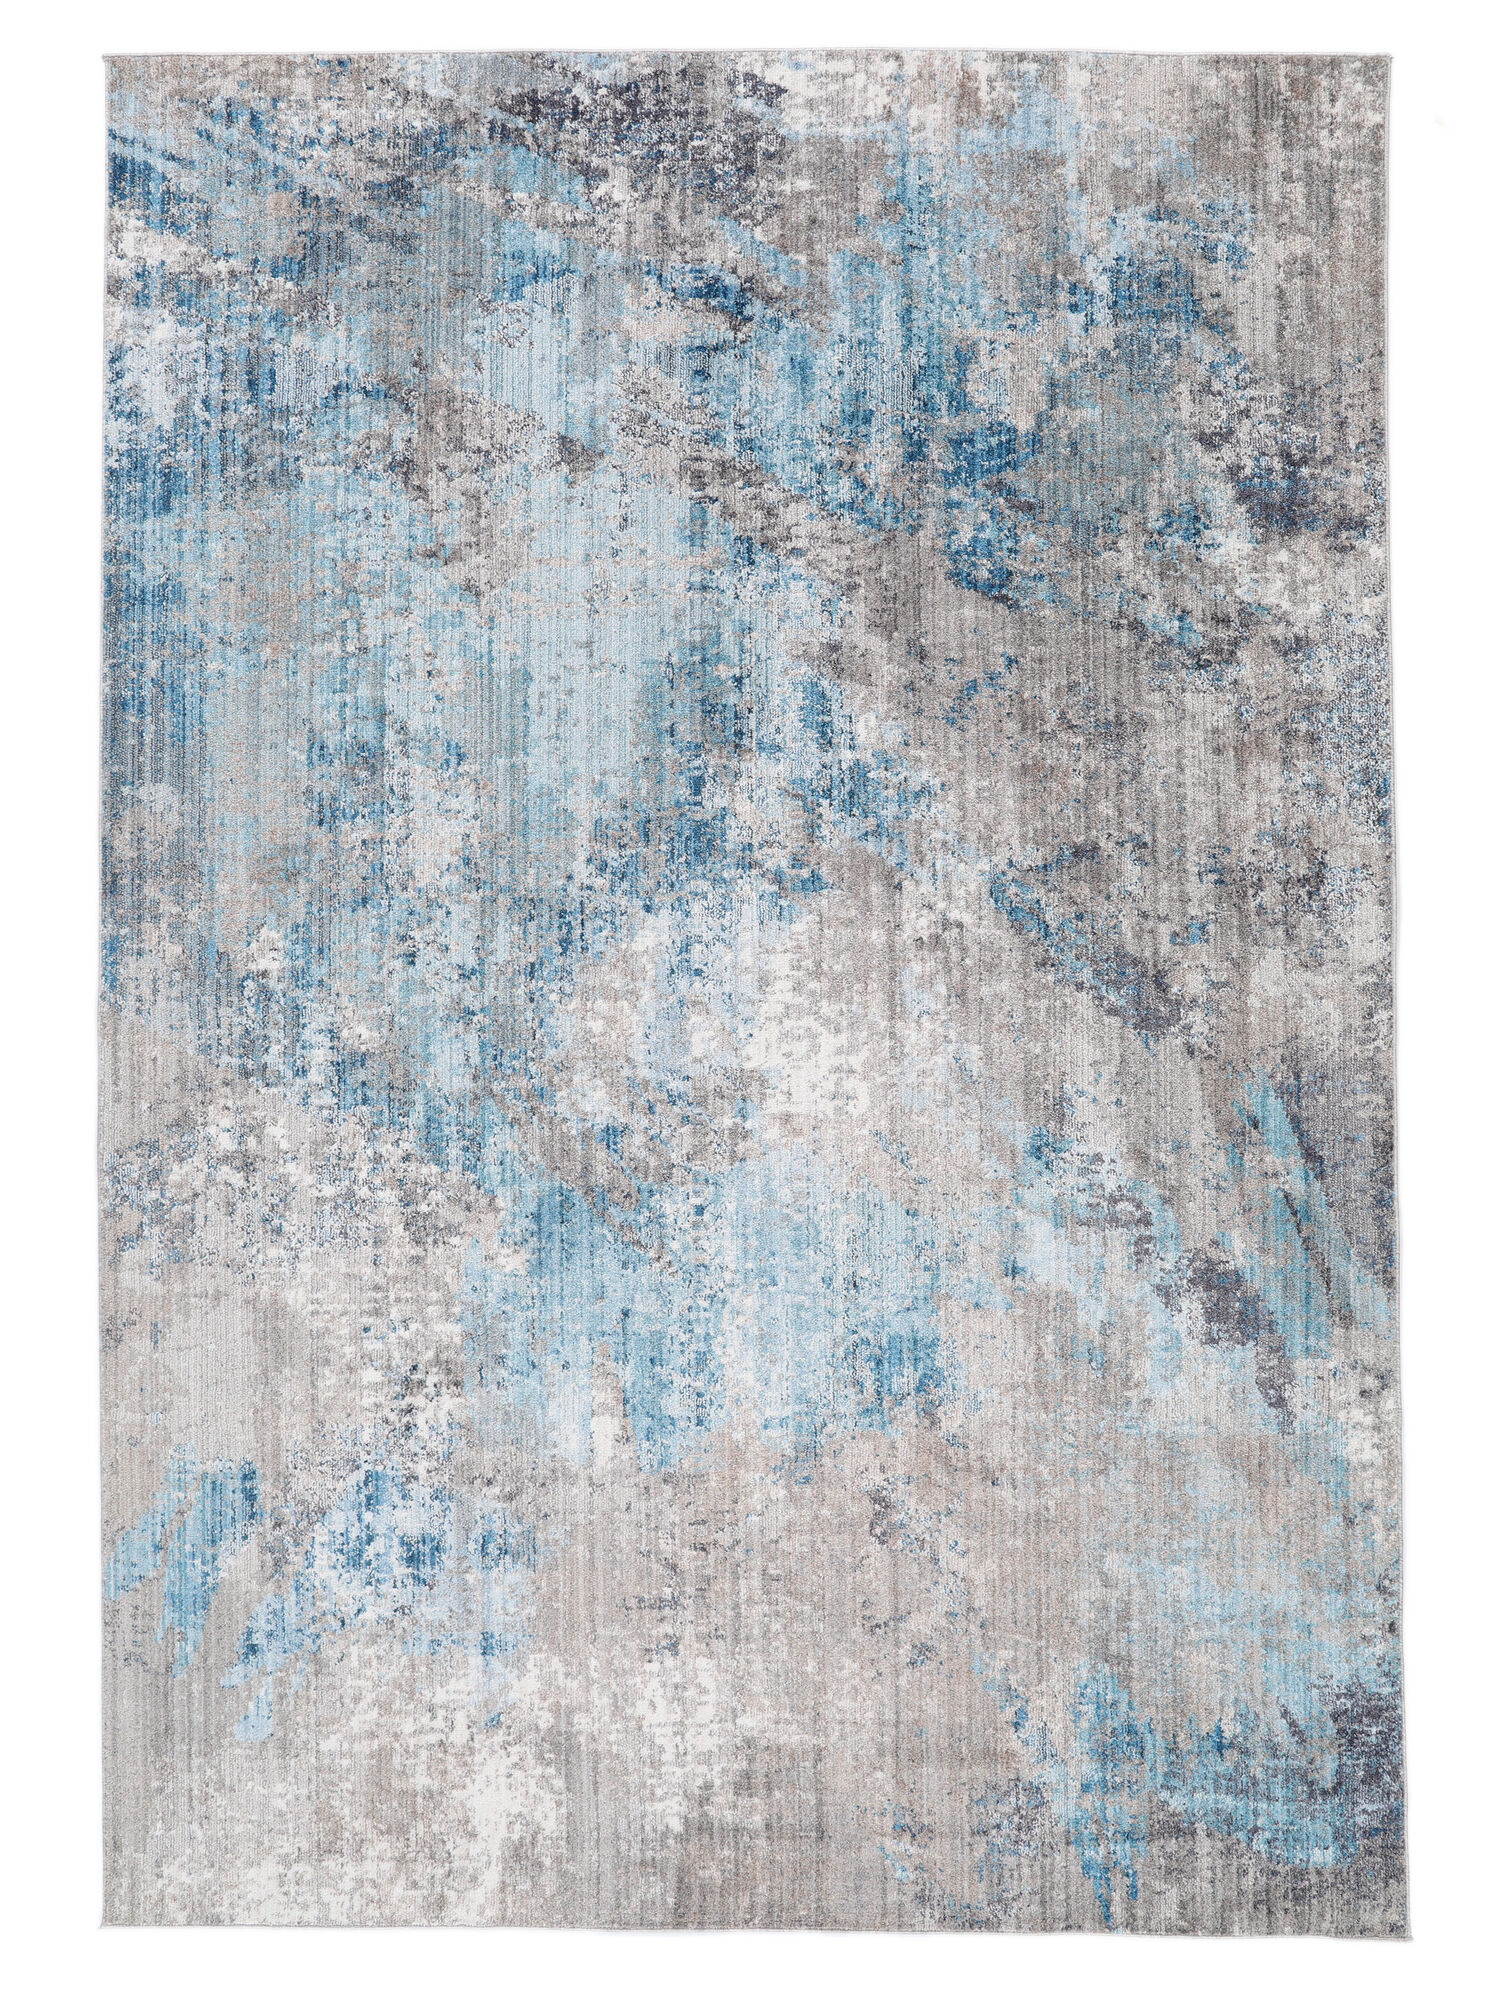  RUGMRZ Teppiche, Dämm- & Schutzmatten Teppich Blaue  Schmetterling Print Dekoration rechteckig mehrere Größen 200 x 300 cm